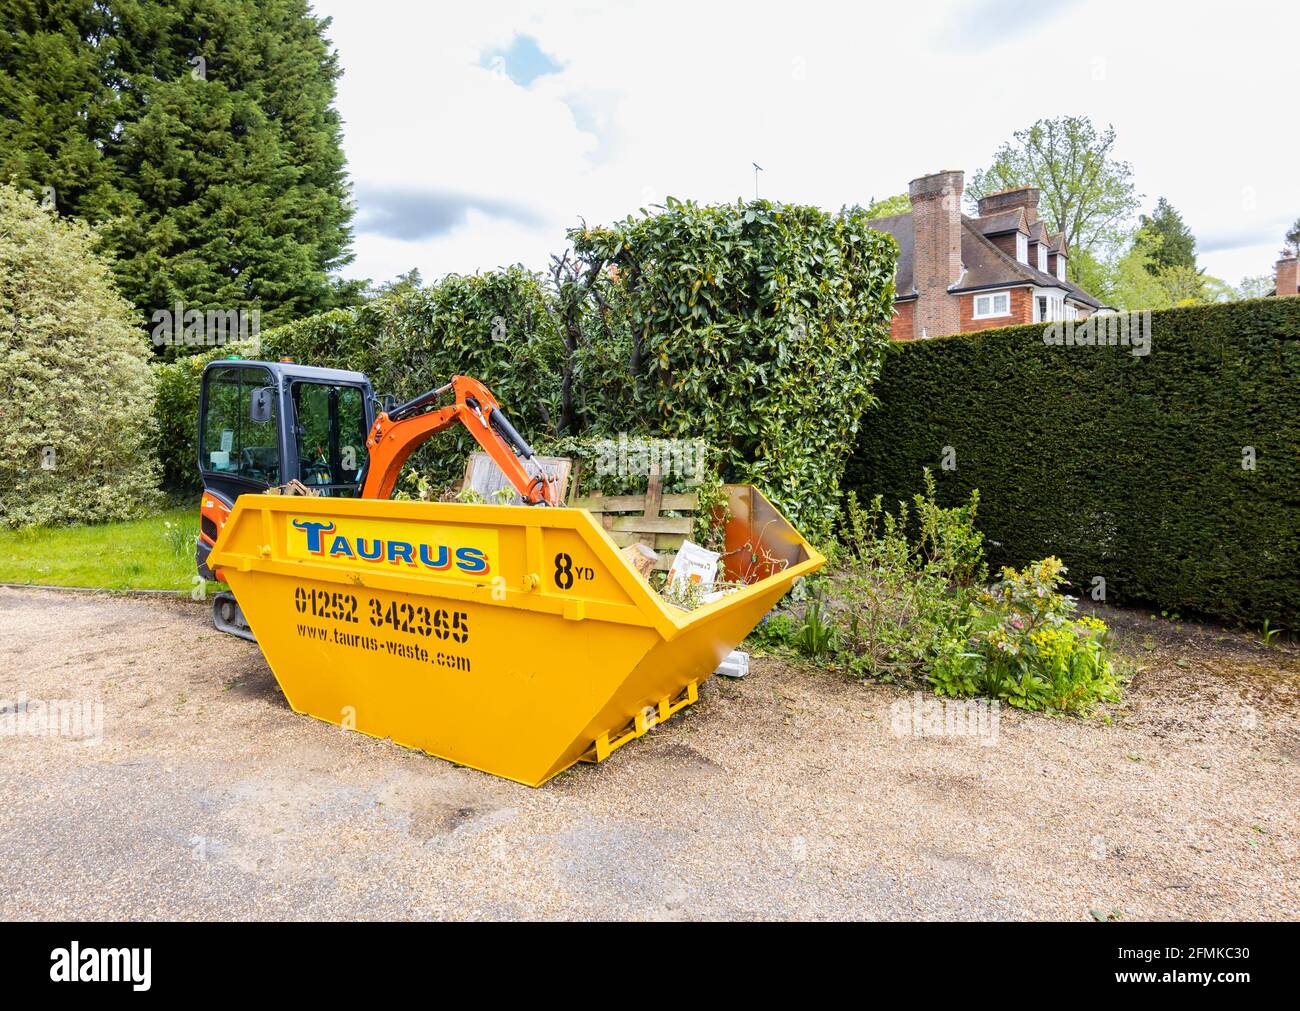 Un véhicule à chenilles en caoutchouc, une minipelle Kubota KX016-4 orange et un saut jaune utilisé pour le dégagement du jardin et l'enlèvement des débris, Surrey, Angleterre Banque D'Images